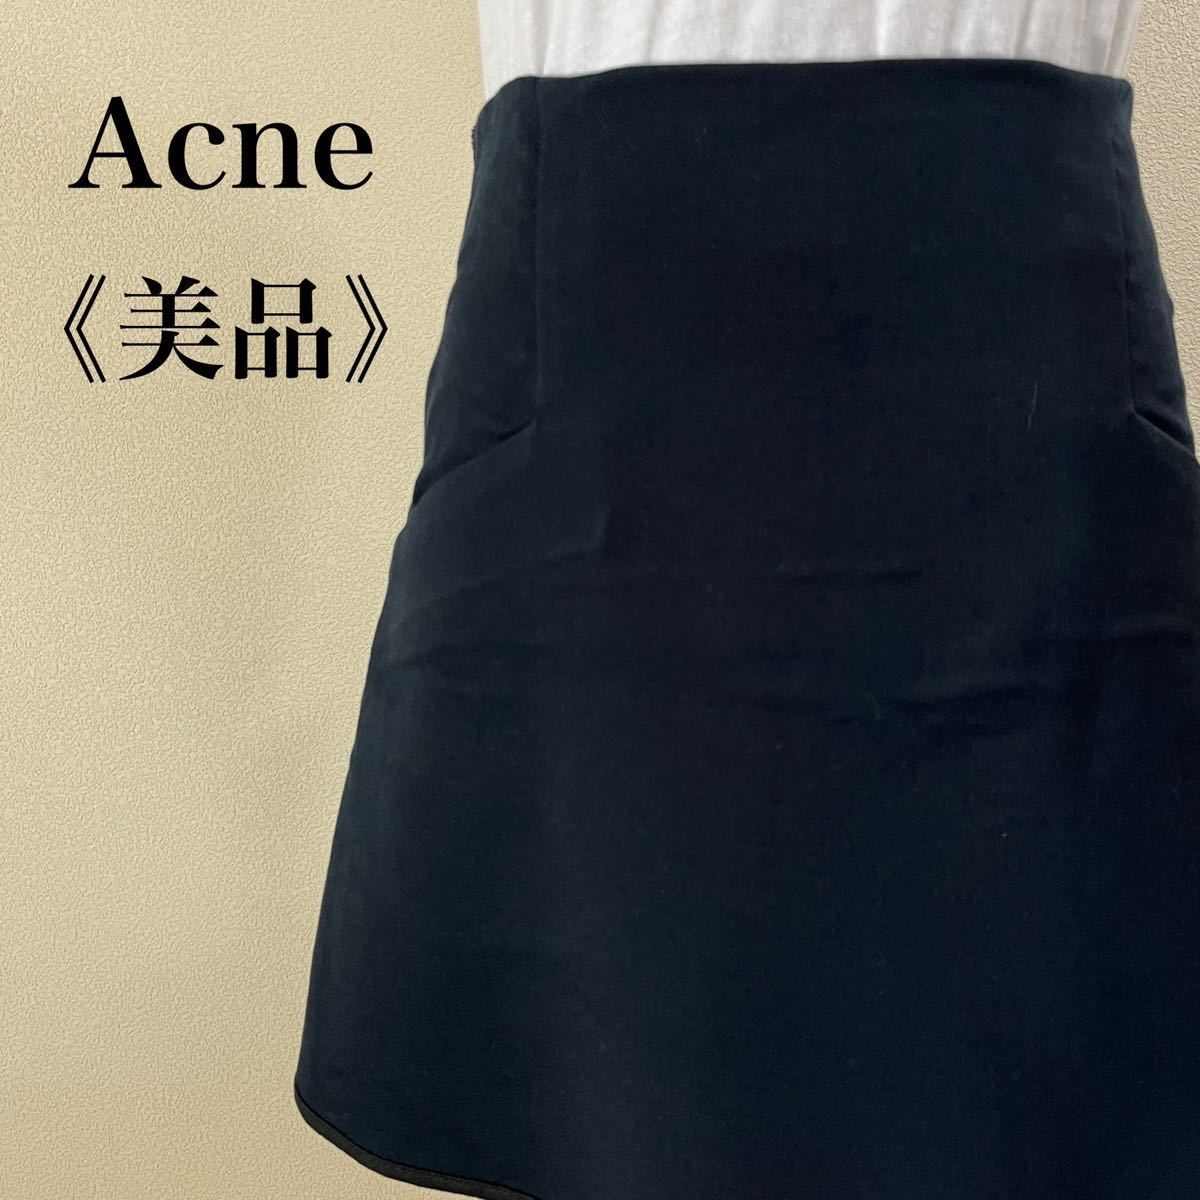 IK237 Acne Acne прекрасный Silhouette задний застежка-молния дизайн хлопок мини-юбка темно-синий серия хлопок царапина . загрязнения нет бесплатная доставка 